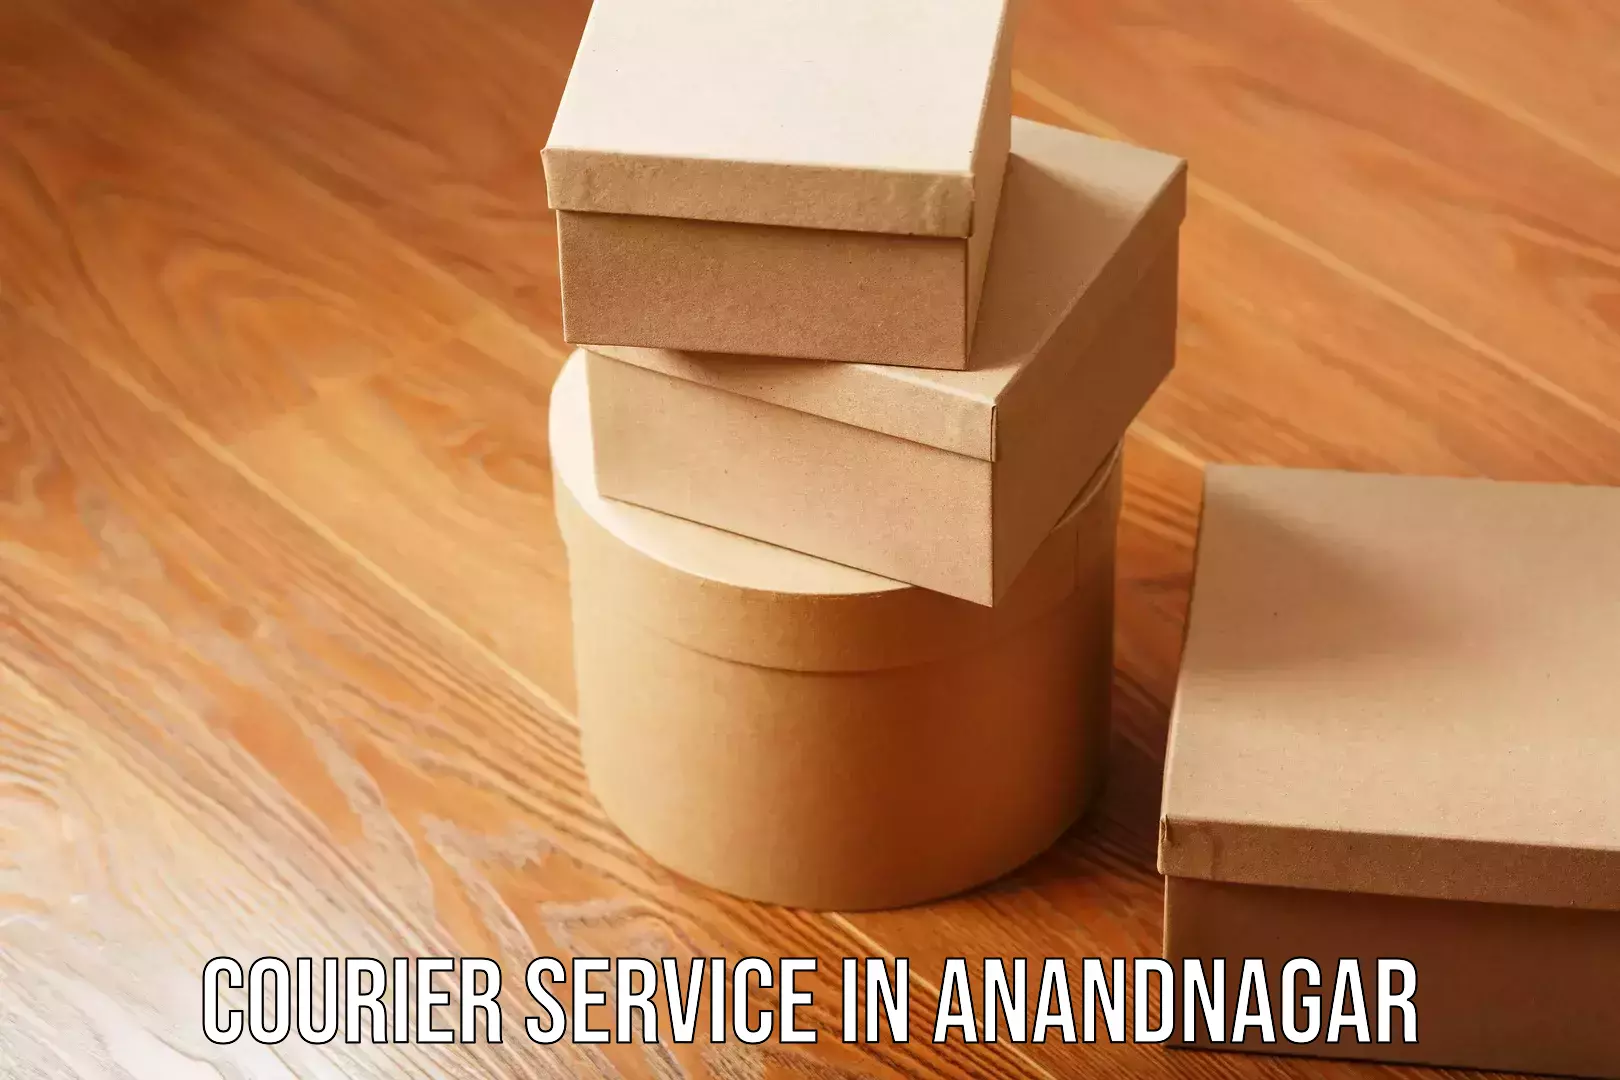 Fast parcel dispatch in Anandnagar